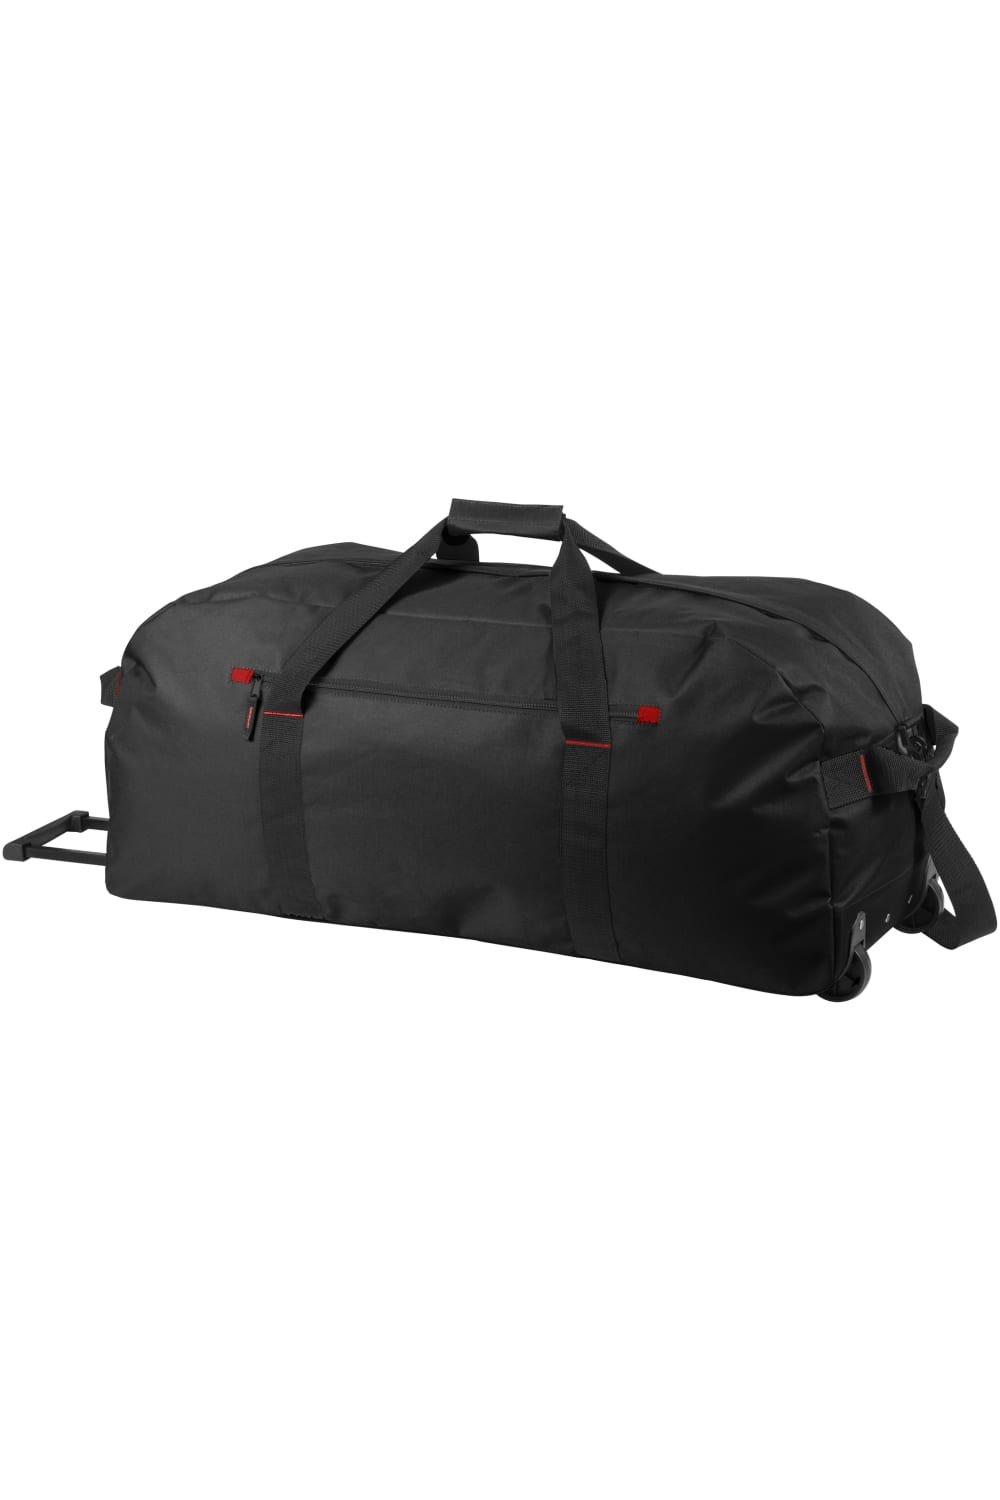 Дорожная сумка Vancouver Trolley Bullet, черный сумка тележка тыловик 40 л мультиколор